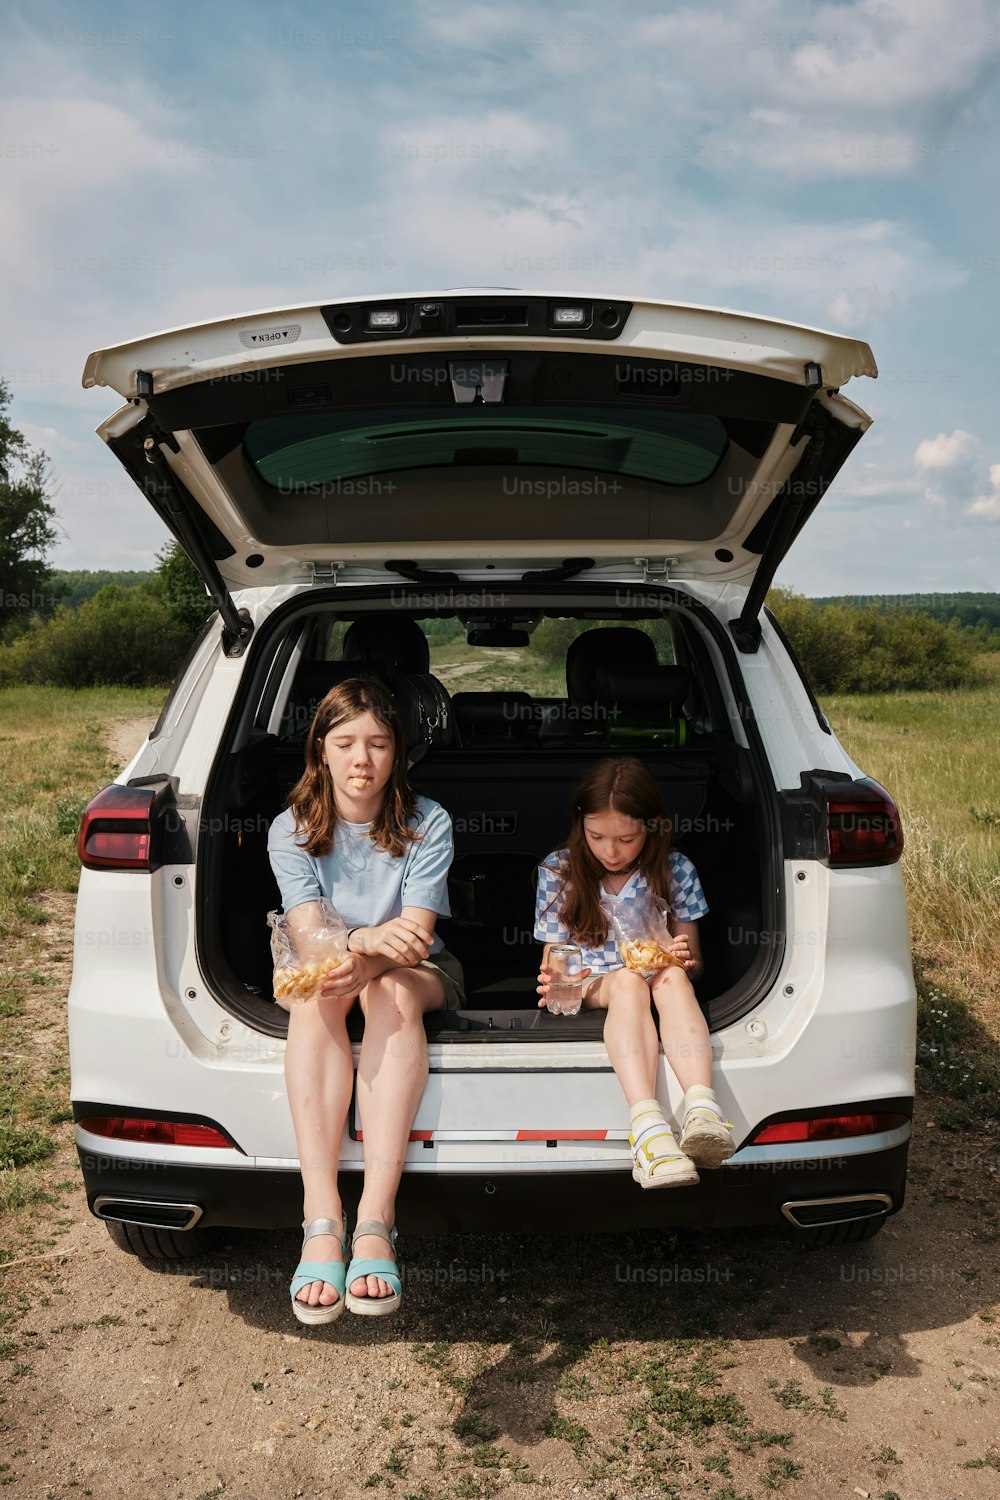 하얀 차 뒤에 앉아 있는 두 소녀